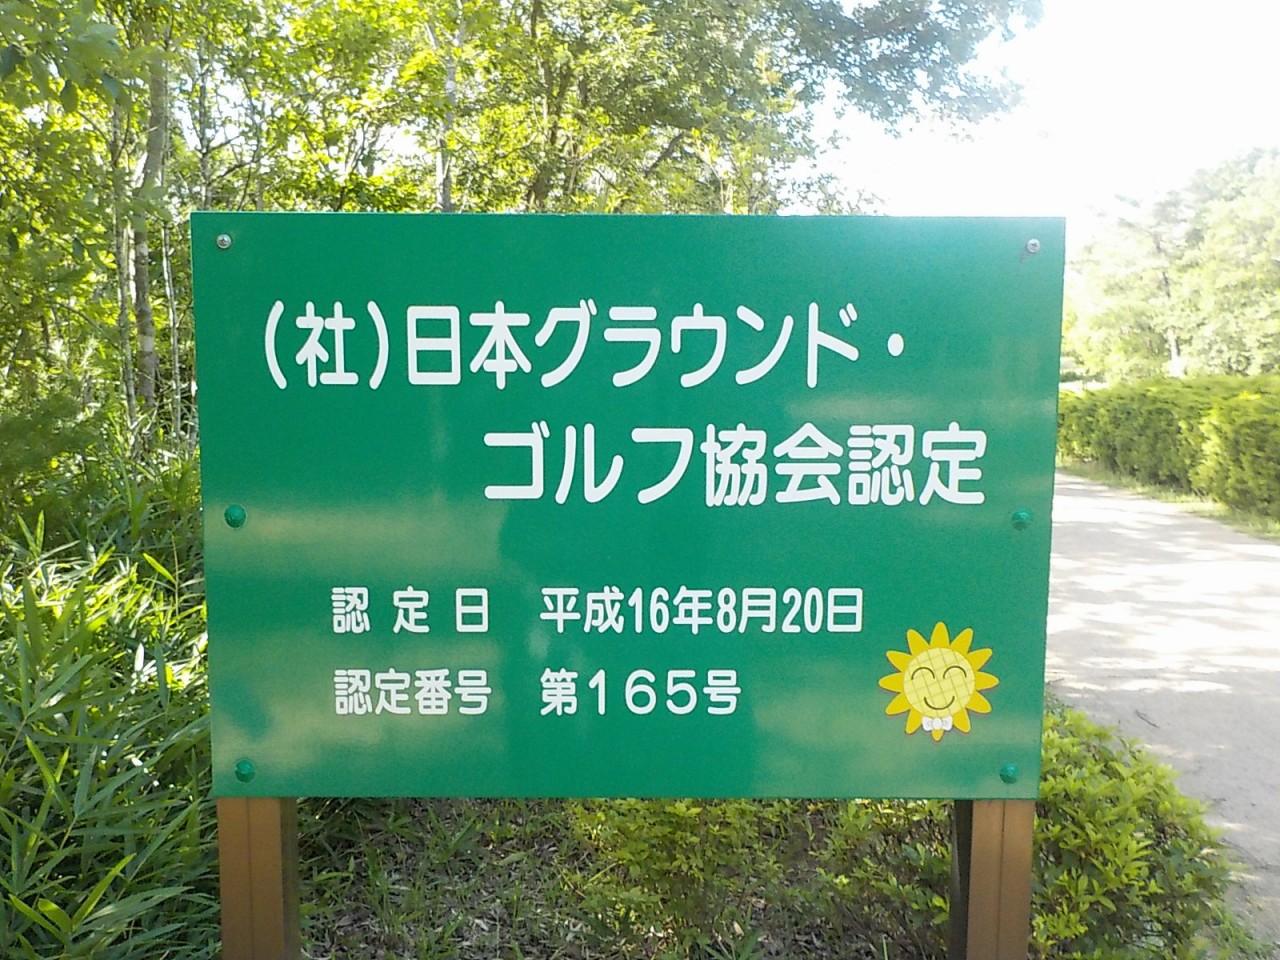 日本グラウンドゴルフ協会認定と書かれた緑色の看板の写真